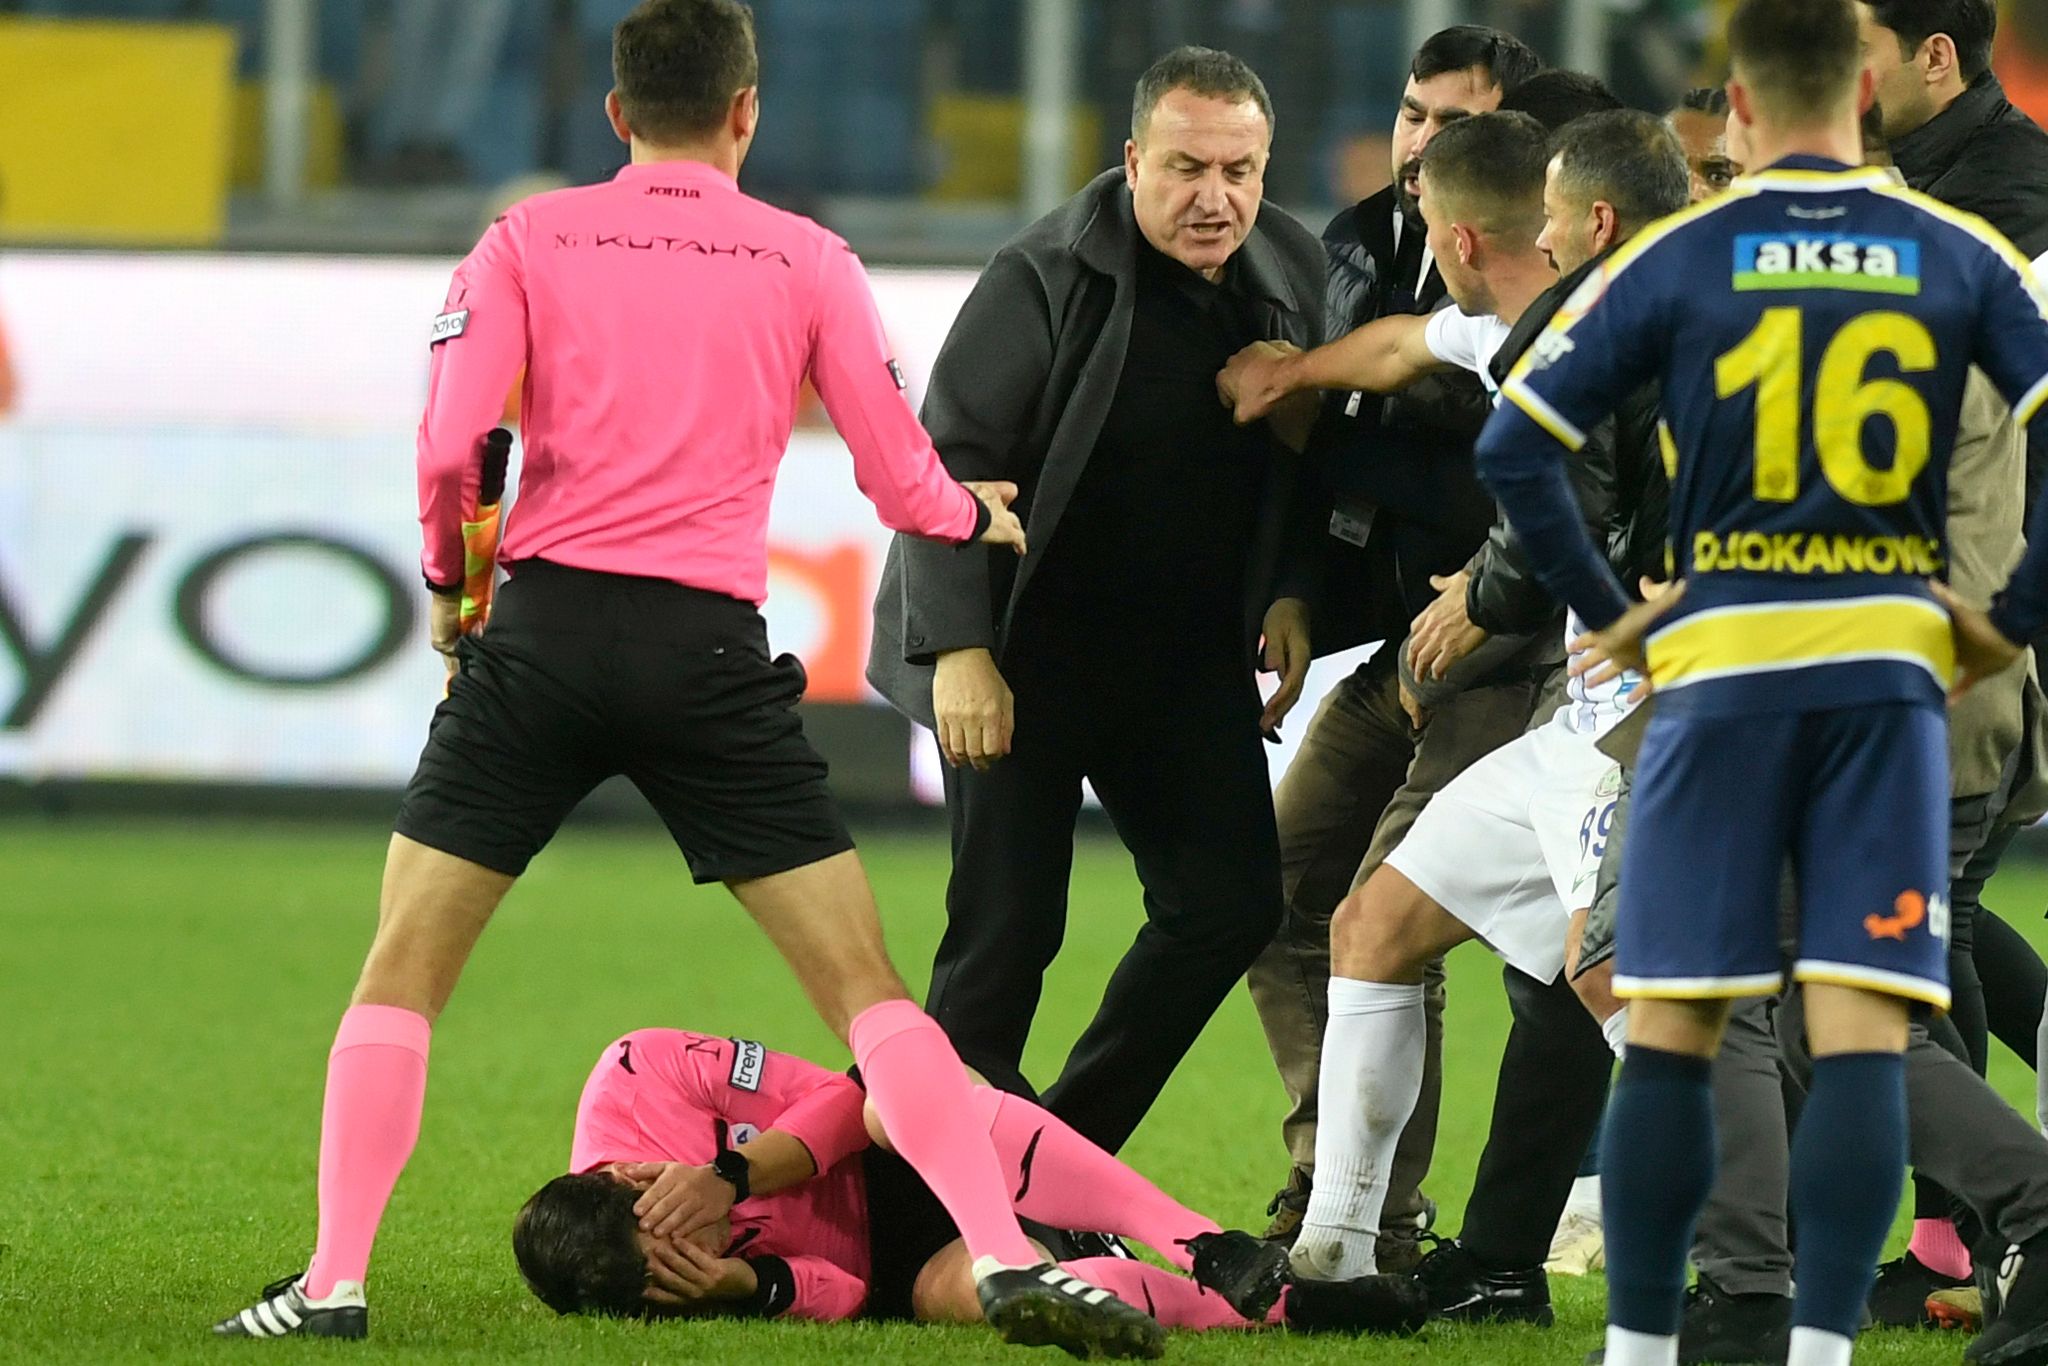 Ankaragücüs Club-Chef Faruk Koca (3.v.l.) brachte den Schiedsrichter Halil Umut Meler mit einem Faustschlag zu Boden.